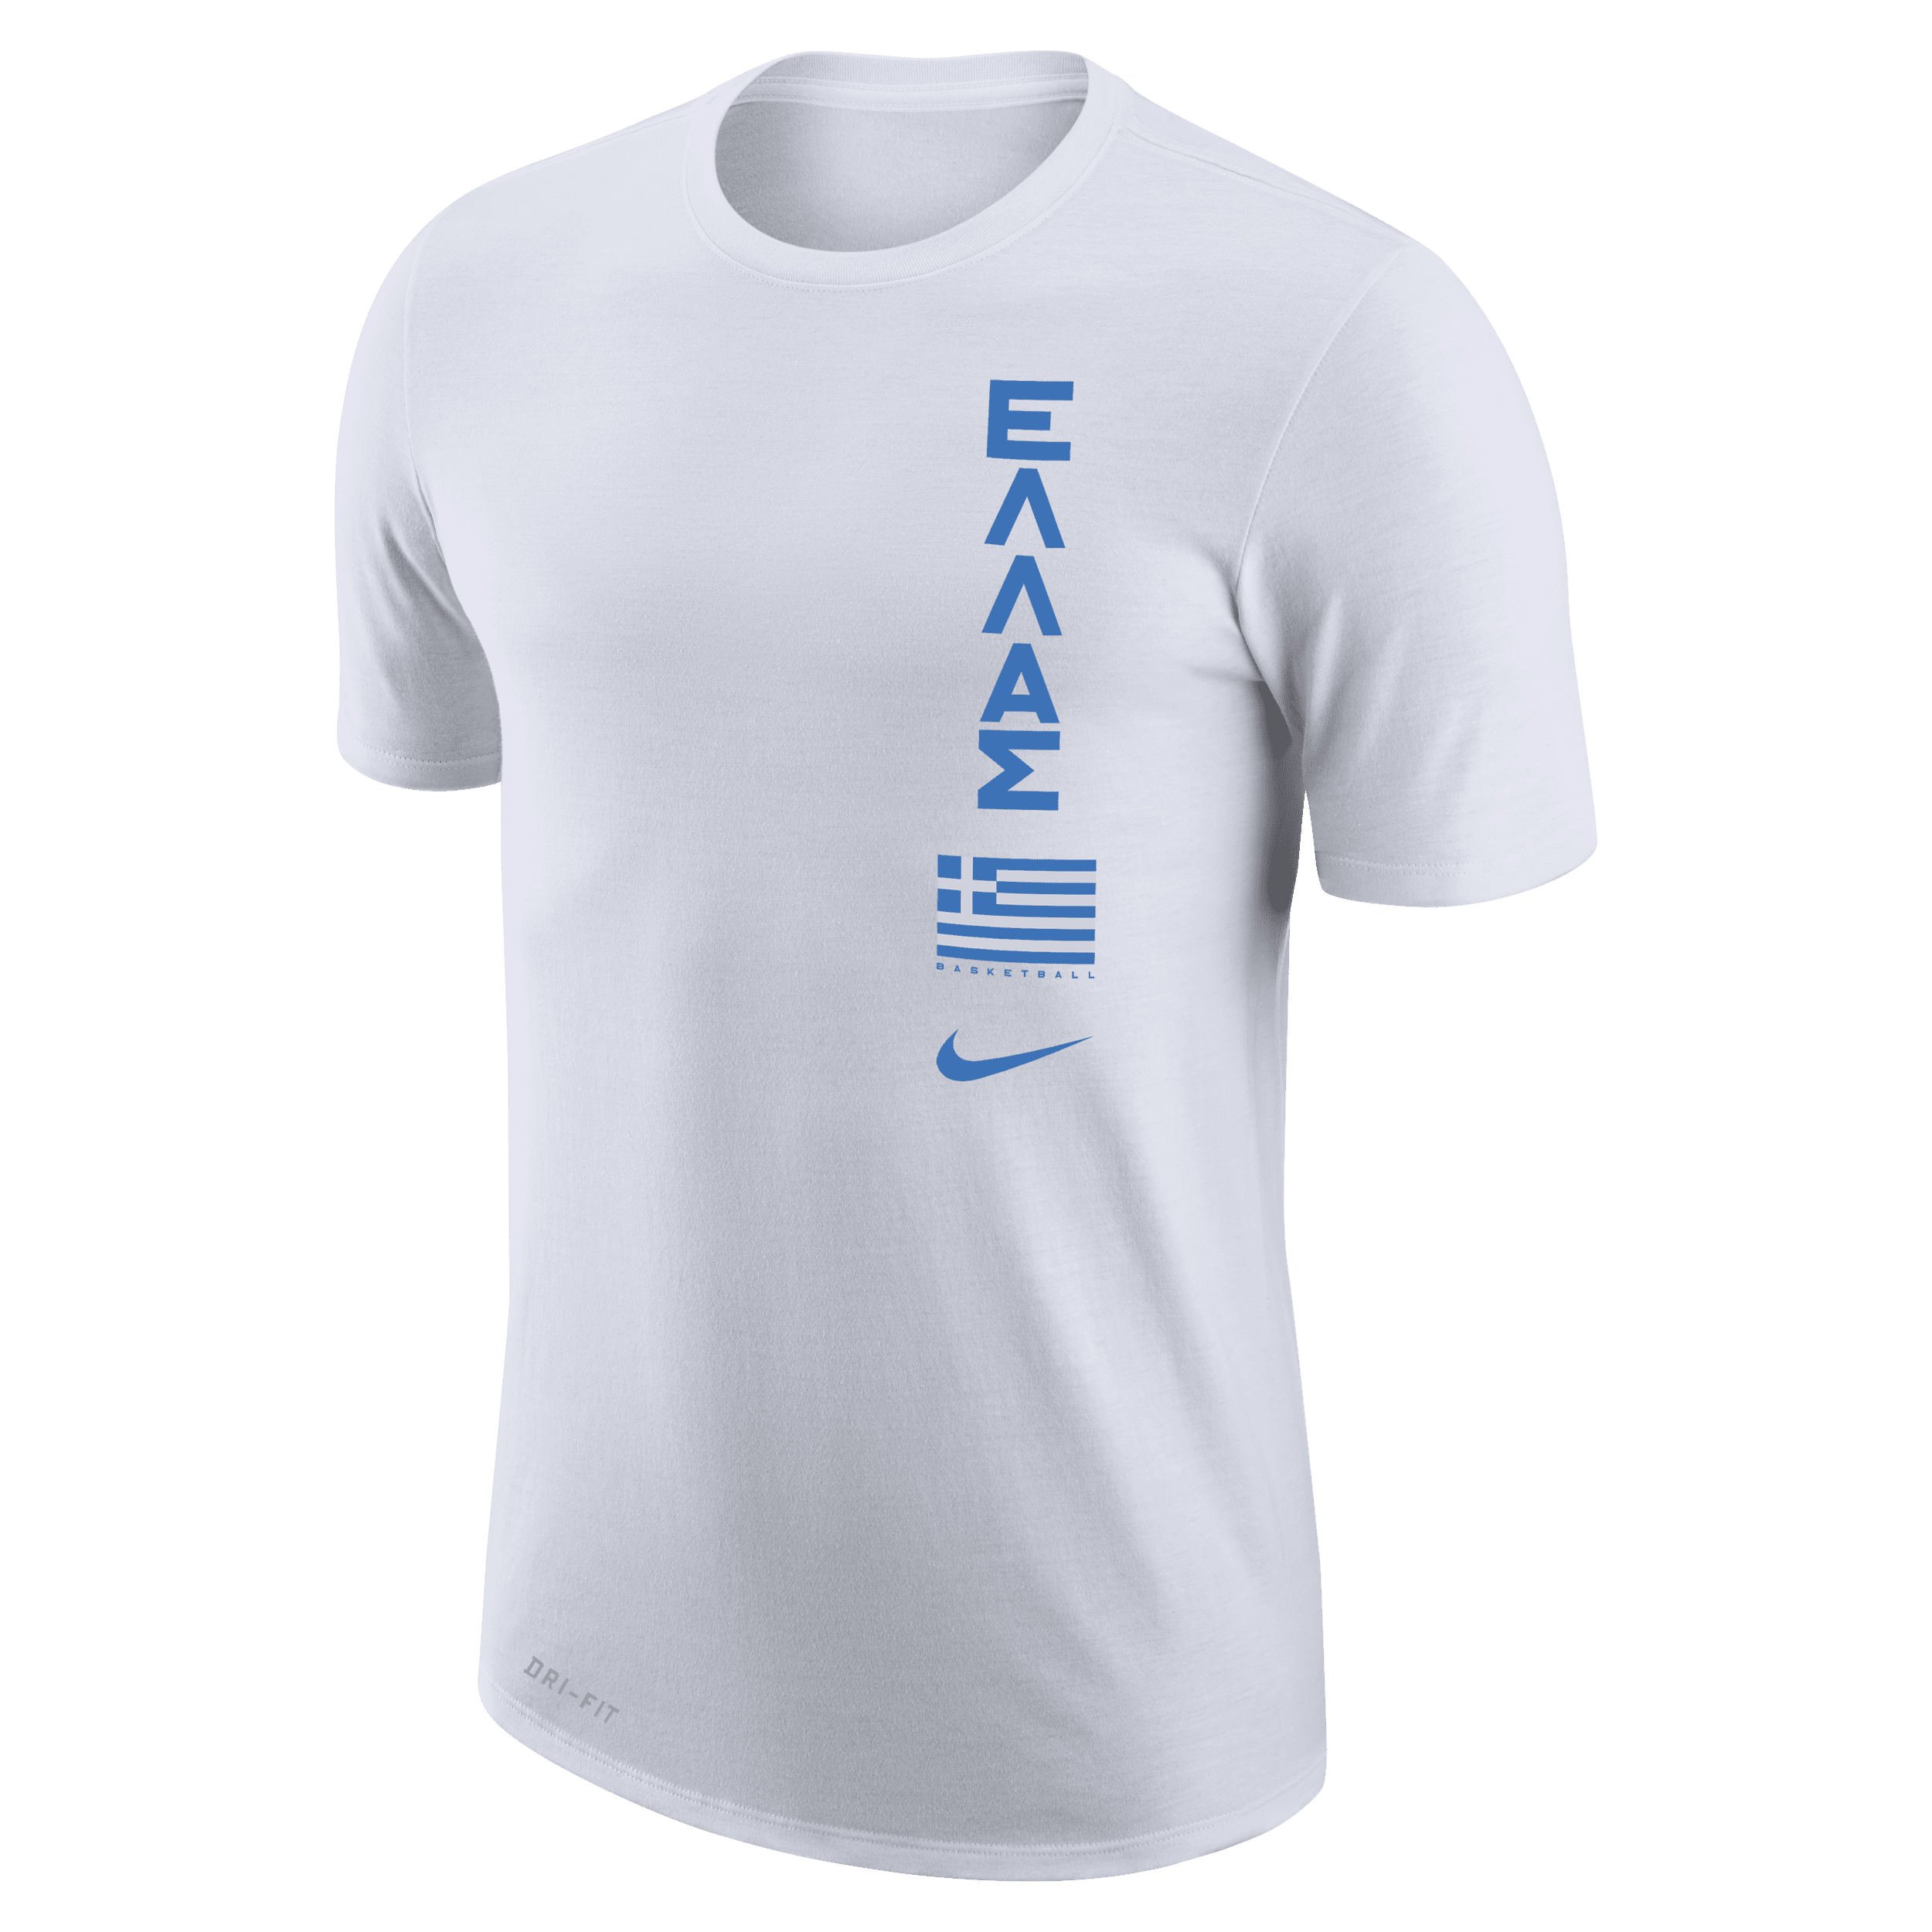 Grækenland Nike Dri-FIT–basketball-T-shirt til mænd - hvid